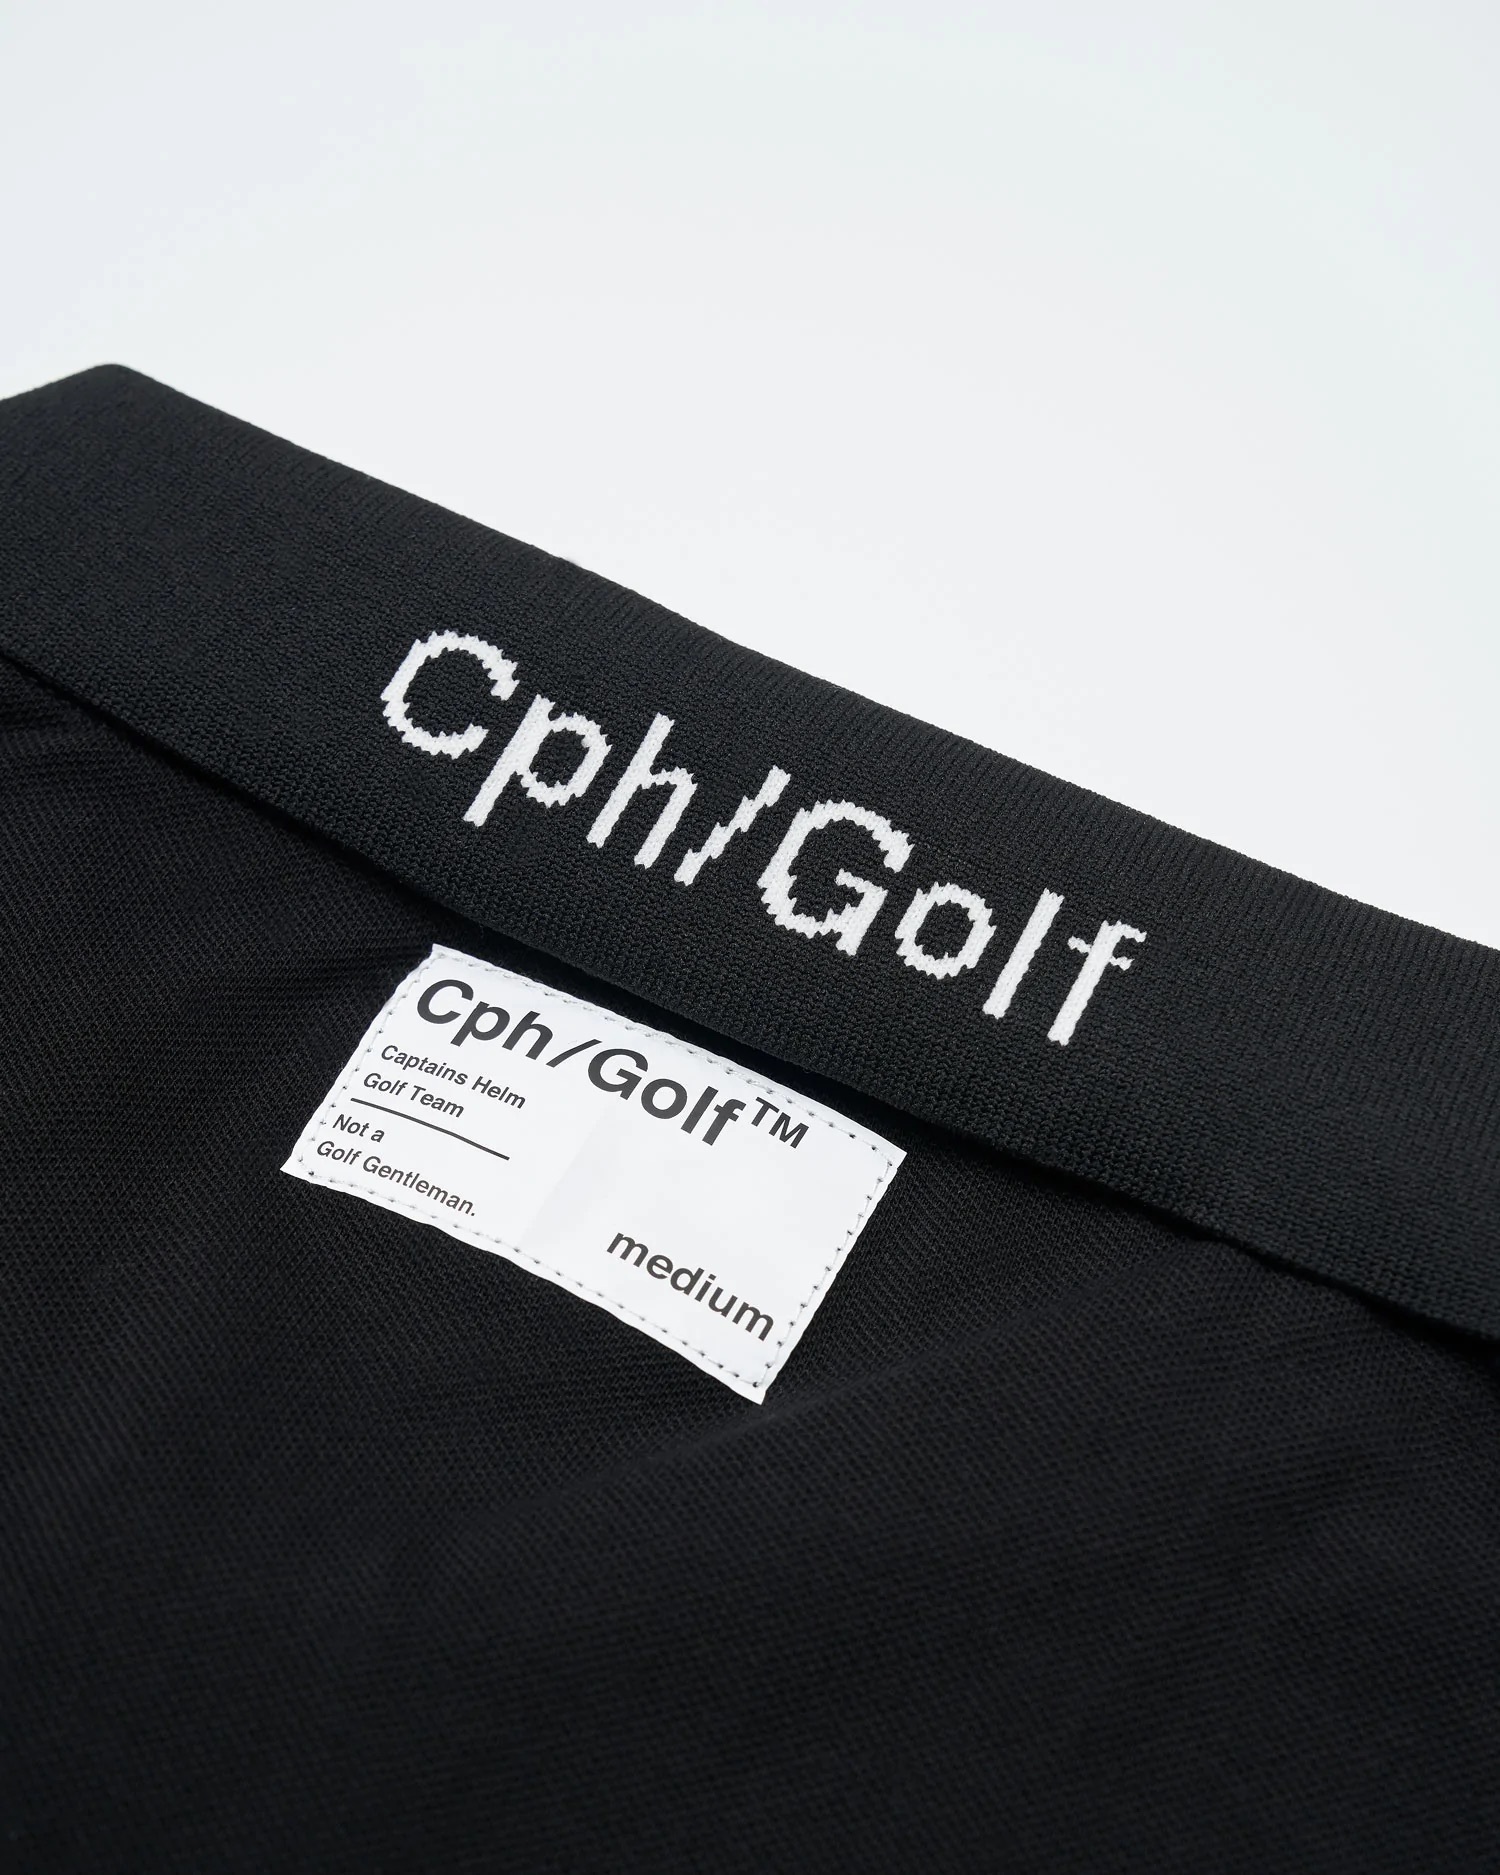 Captains Helm Golf TOURBON ×Cph Cph/Golf - バッグ